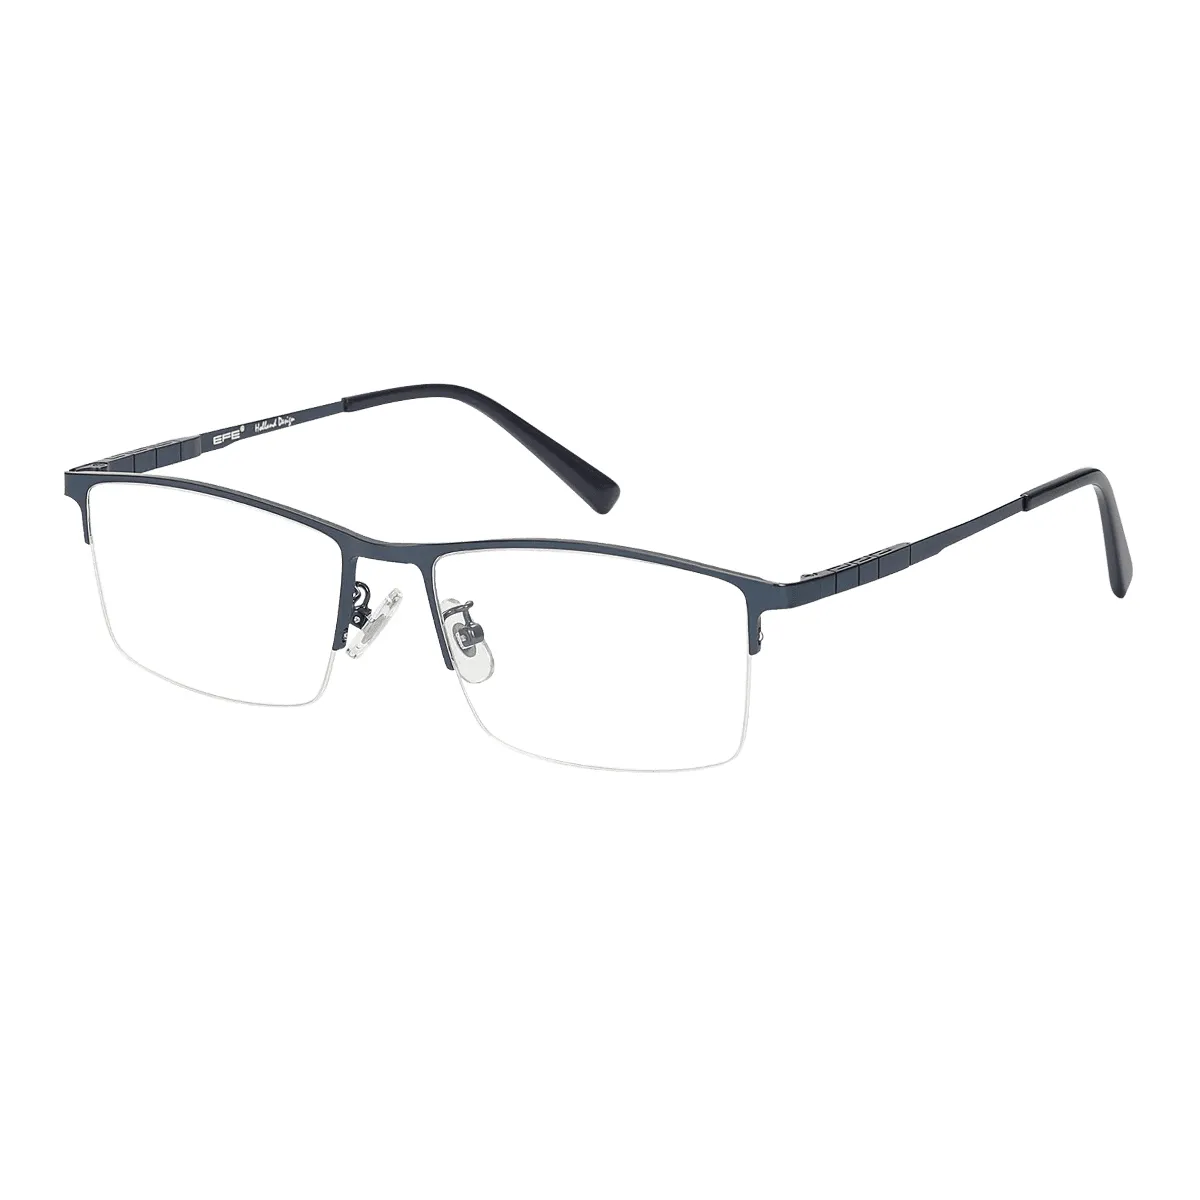 Clifford - Browline Blue Glasses for Men - EFE